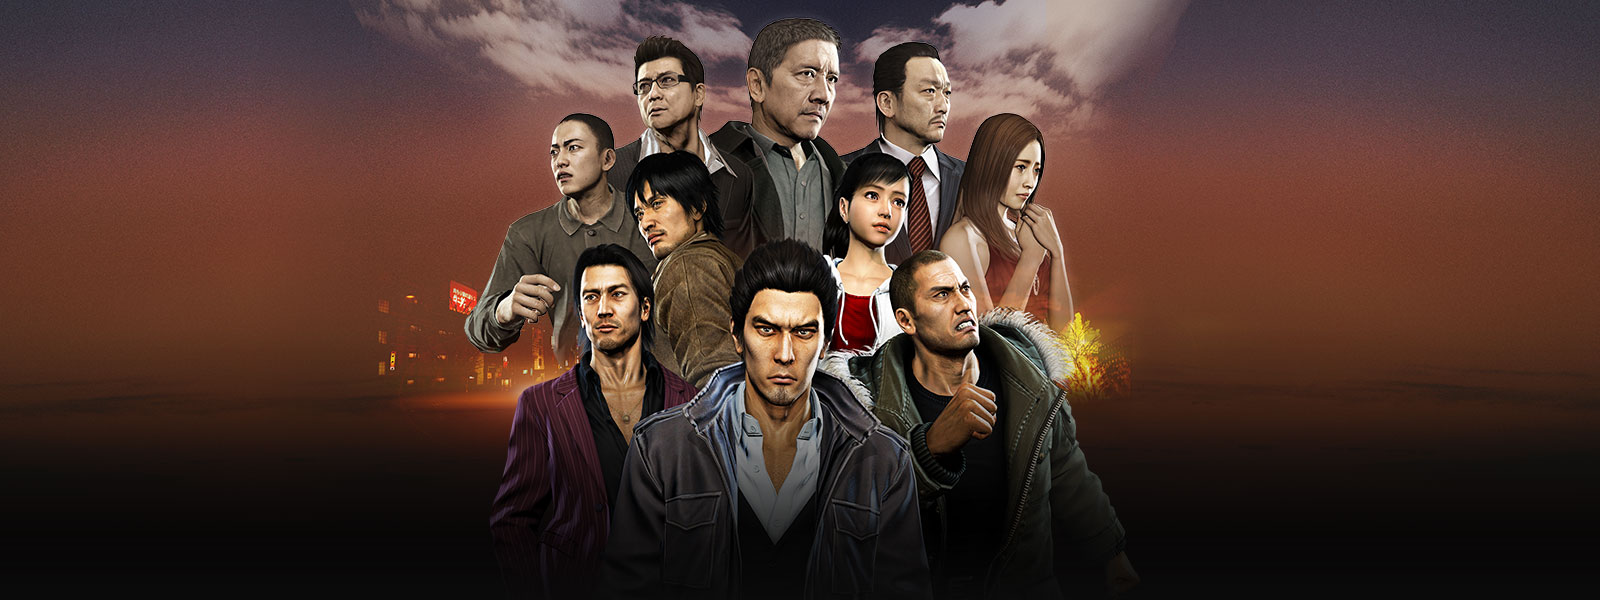 Kazuma Kiryu staat voor een collage van personages uit de Tojo-clan en Omi Alliance met een mistig stadsbeeld op de achtergrond